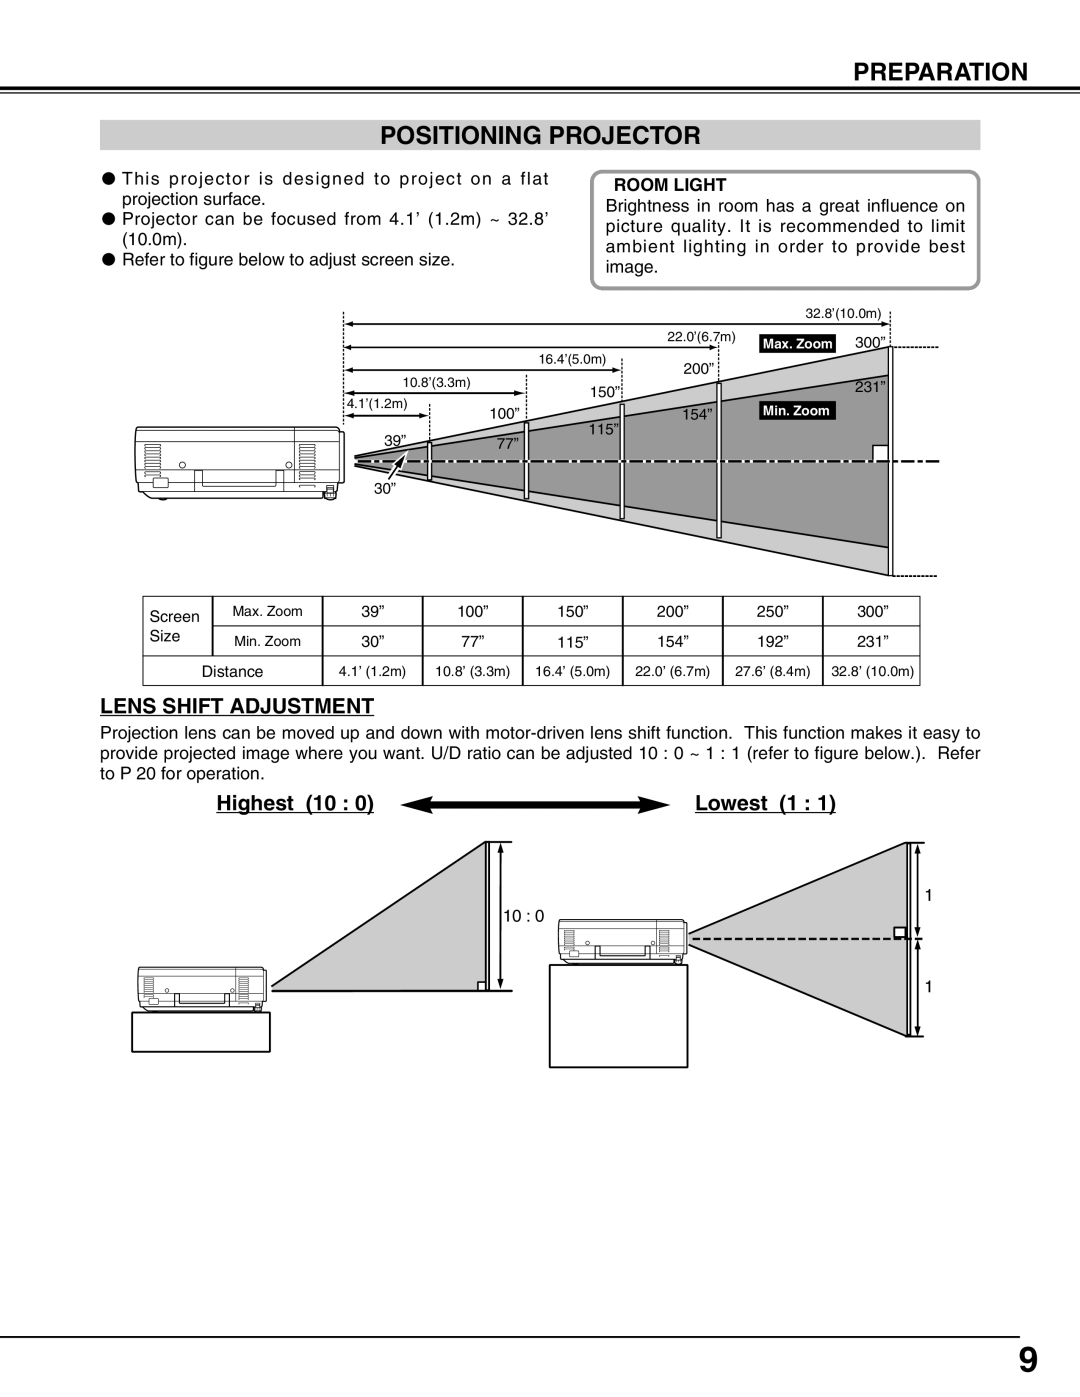 Christie Digital Systems 38-VIV207-01 Preparation Positioning Projector, Lens Shift Adjustment, Highest 10, Lowest 1 